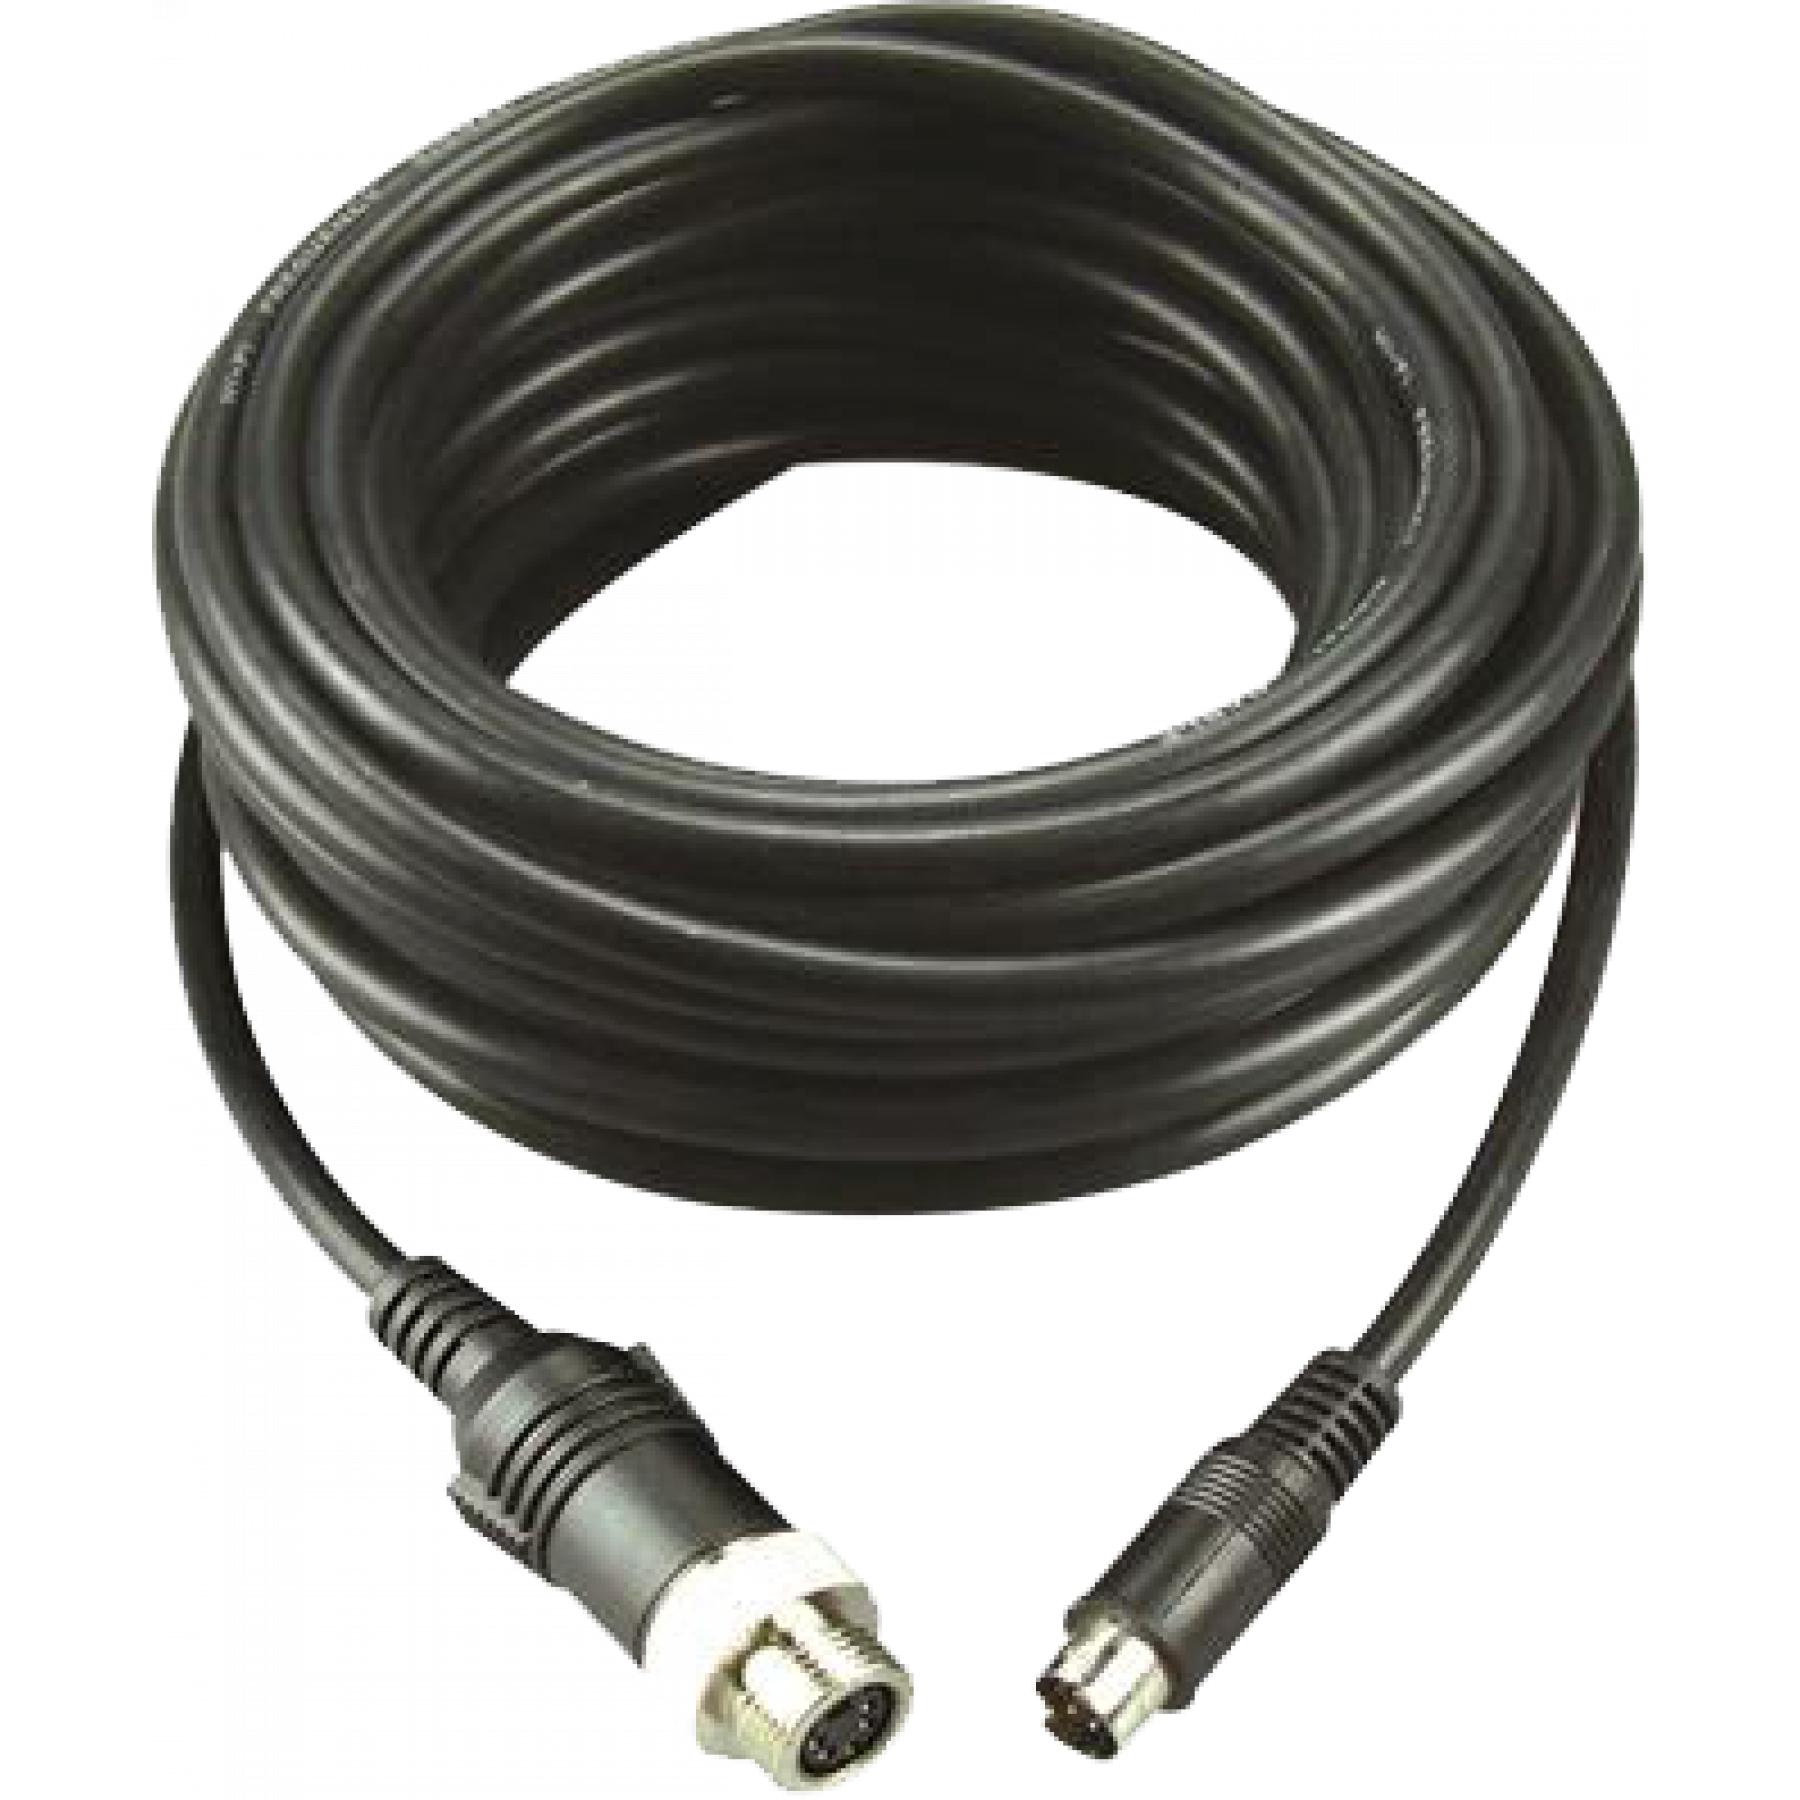 MXN kabel 10 meter